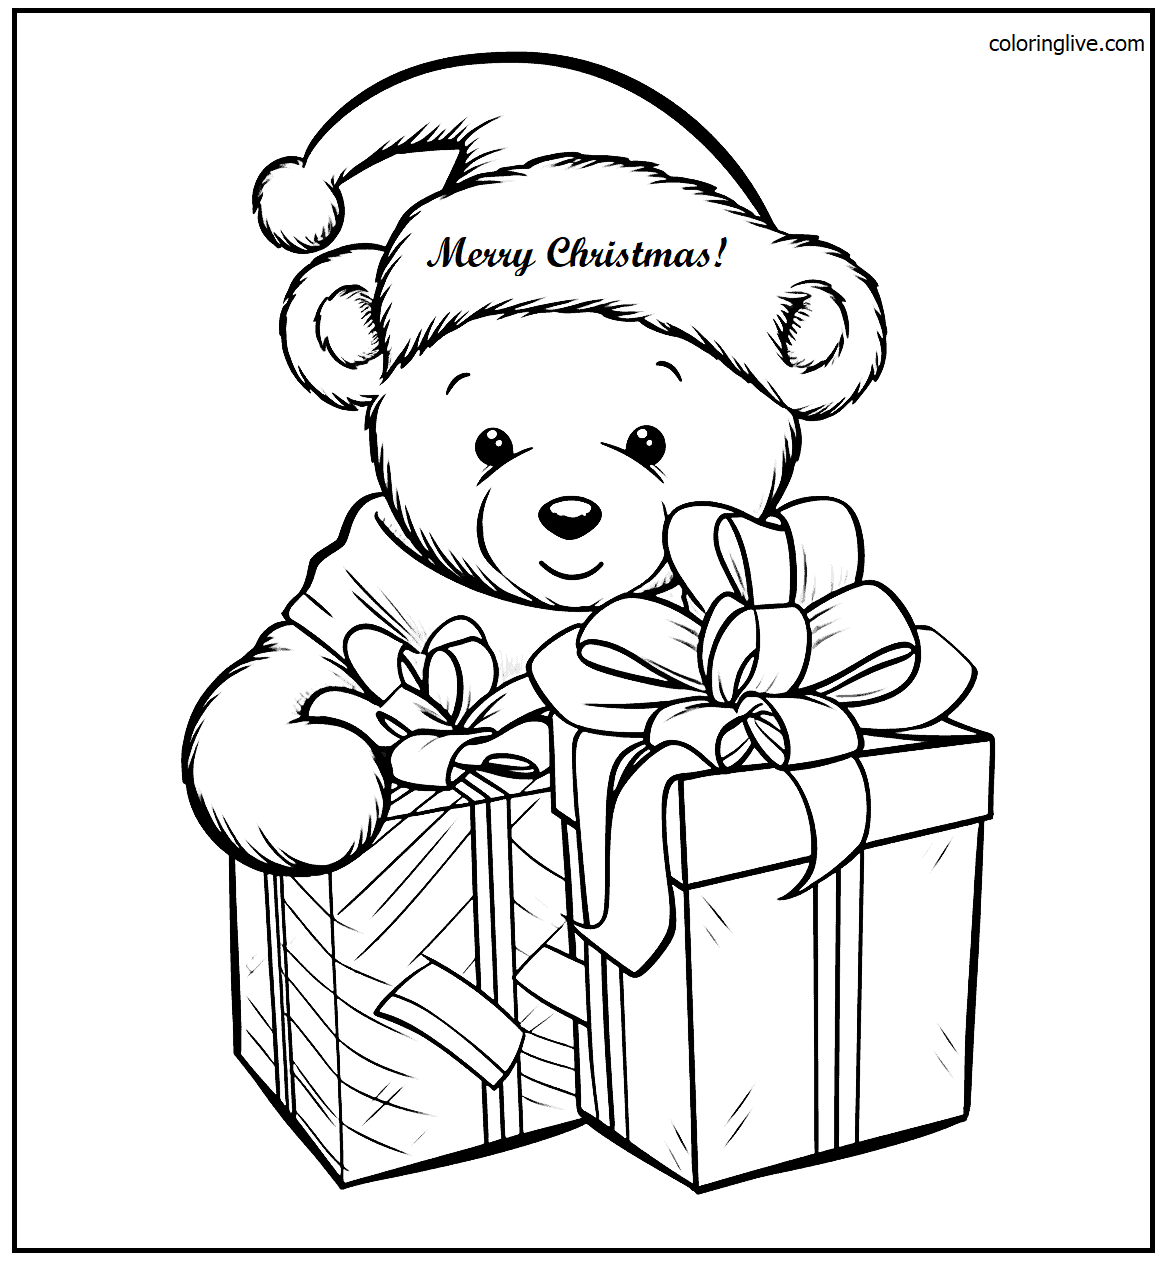 Printable Christmas  Sheet Gift Coloring Page for kids.